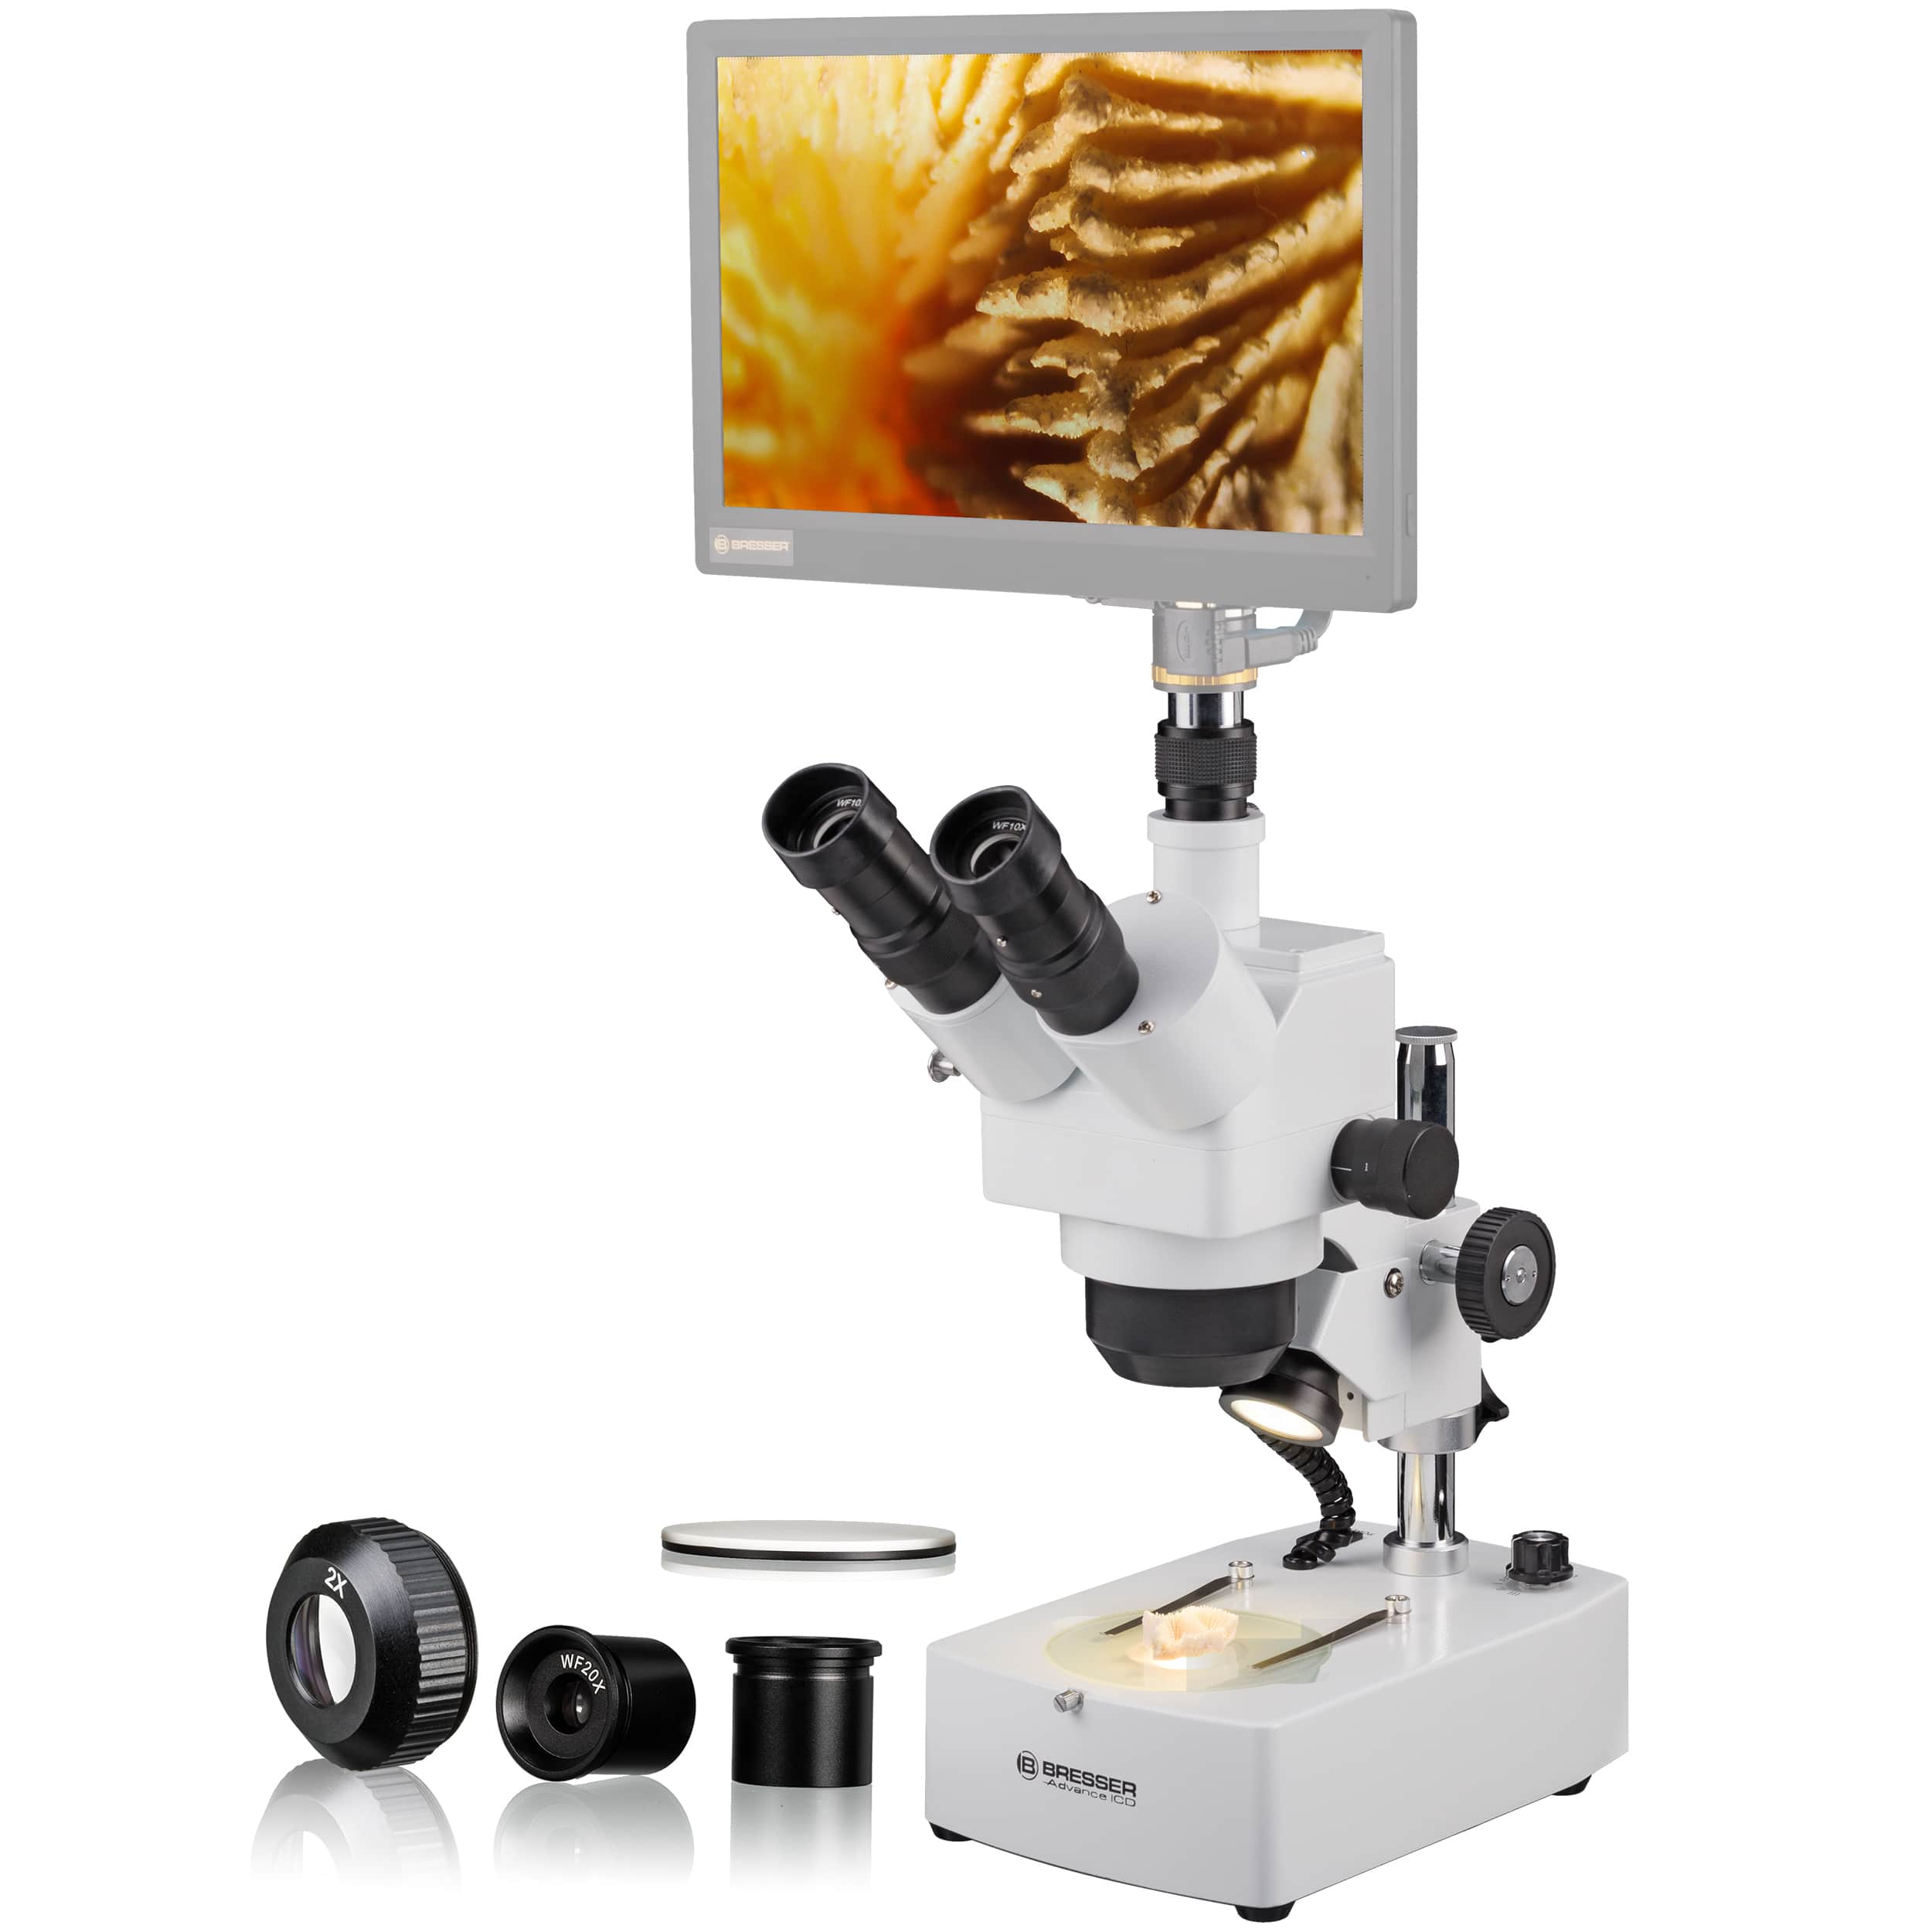   Stereomicroscopio di alta qualità per hobby e applicazioni professionali  